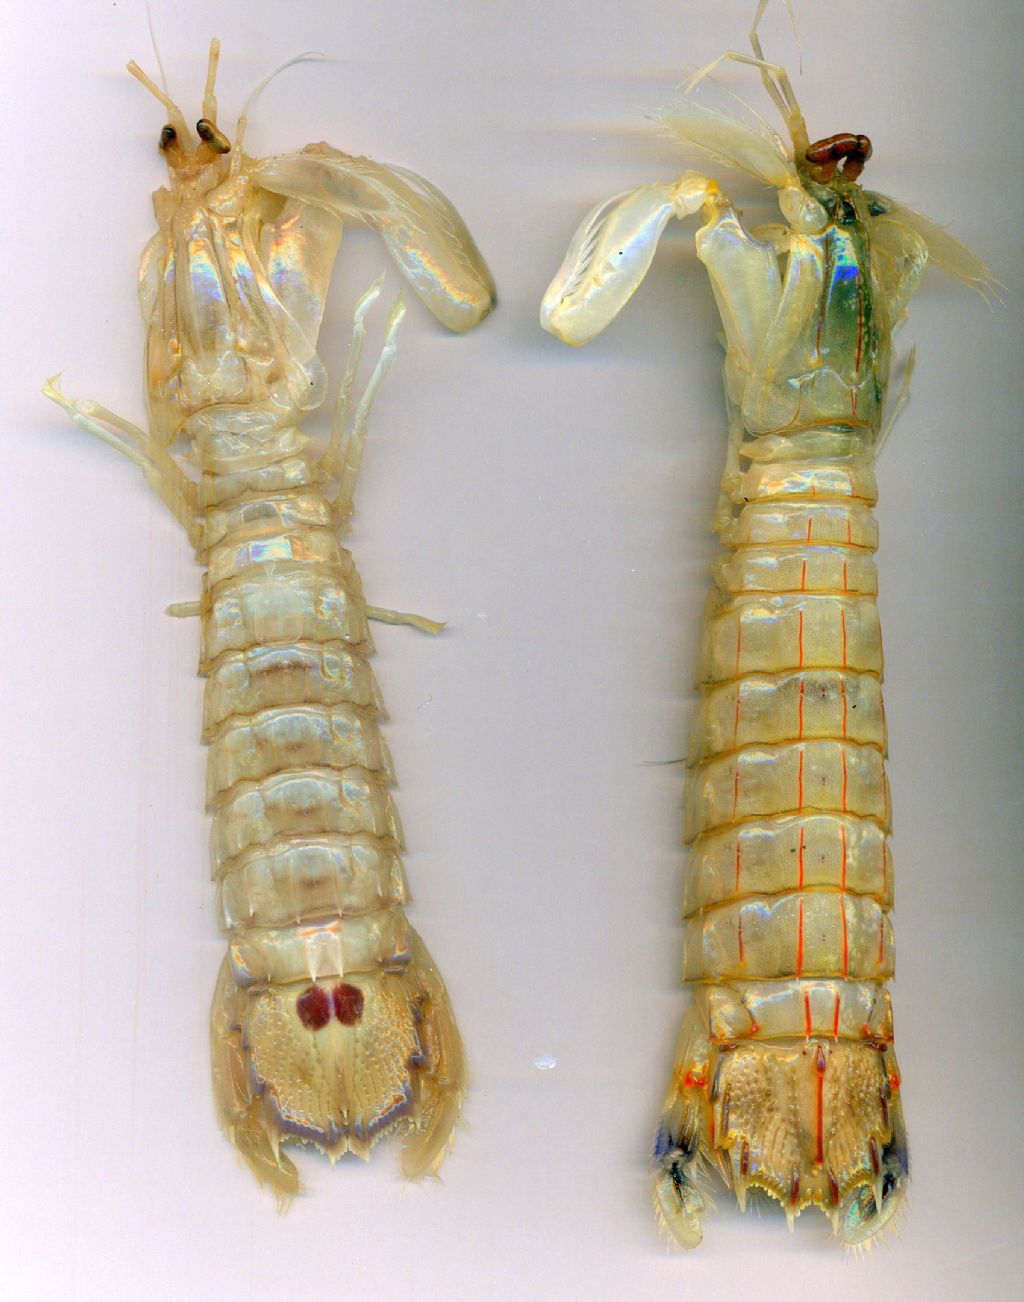 Erugosquilla massavensis et  Squilla mantis